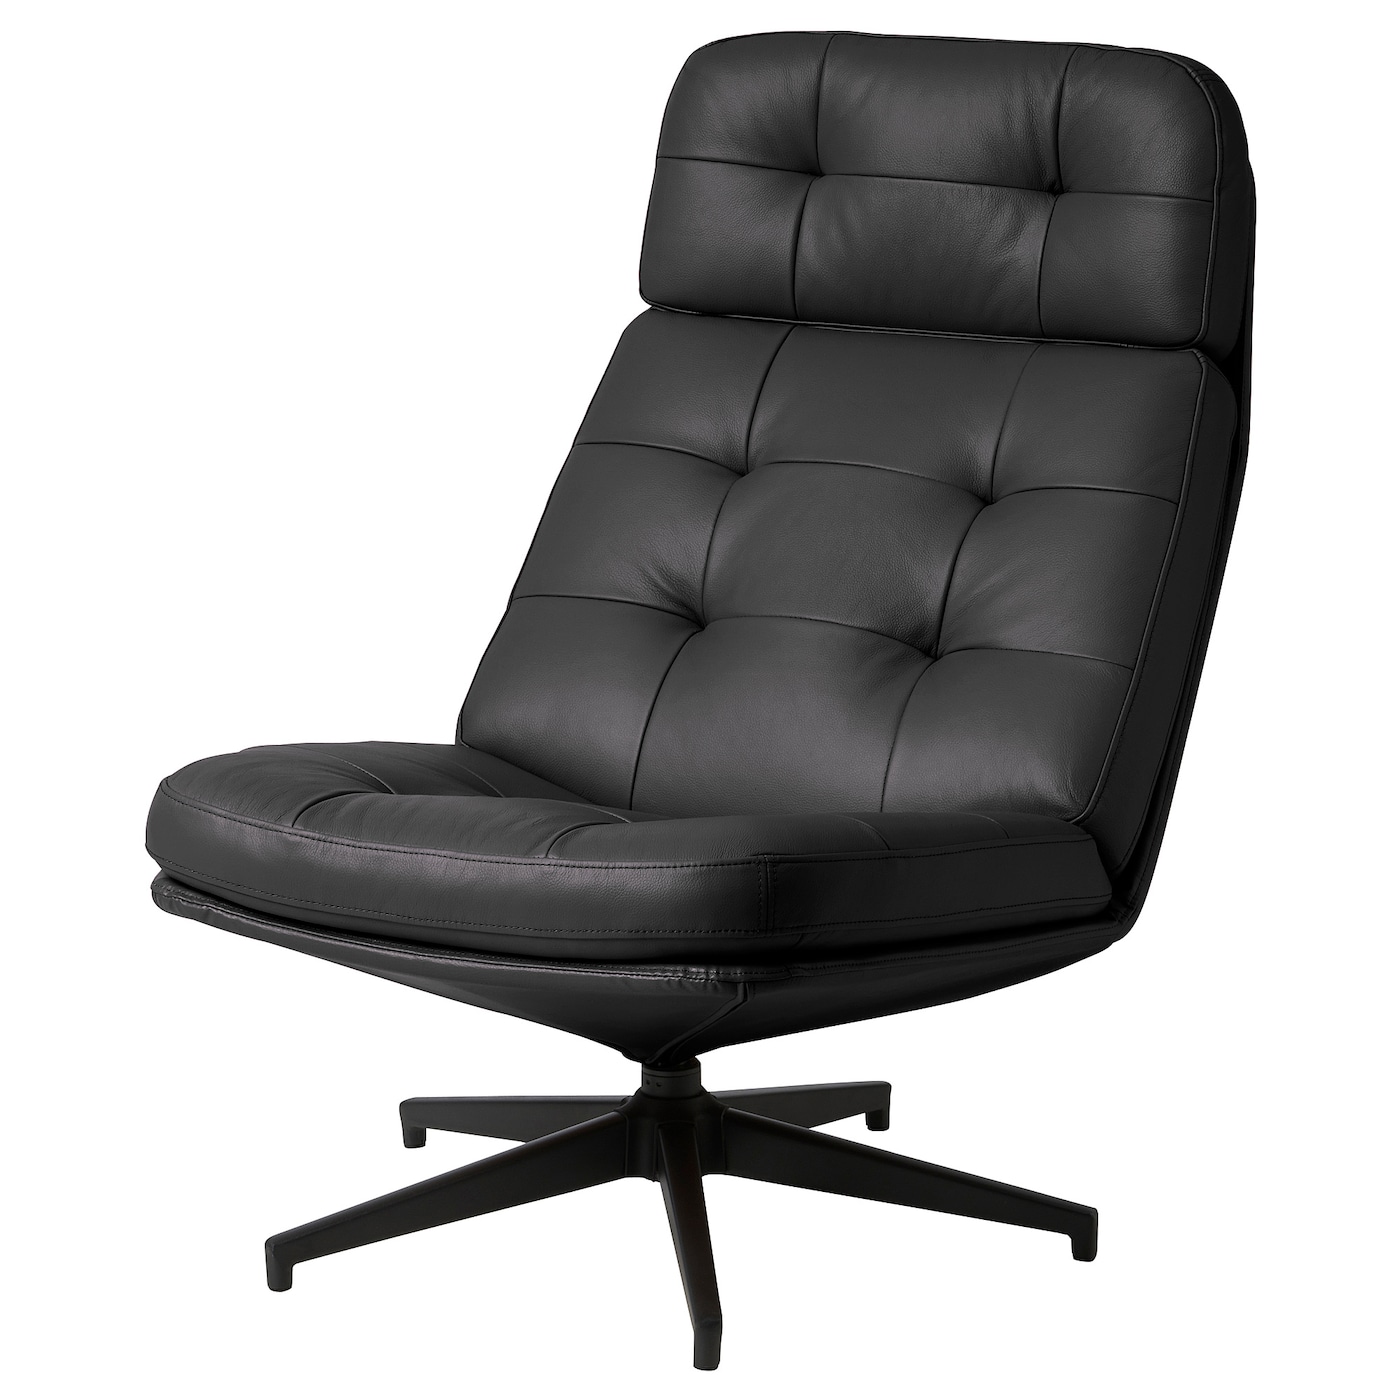 ХАВБЕРГ Вращающееся кресло, Гранн/Бомстад черный HAVBERG IKEA компьютерное кресло gy офисное кресло студенческое учебное кресло подъемное небольшое вращающееся кресло удобное длинное сидение прост